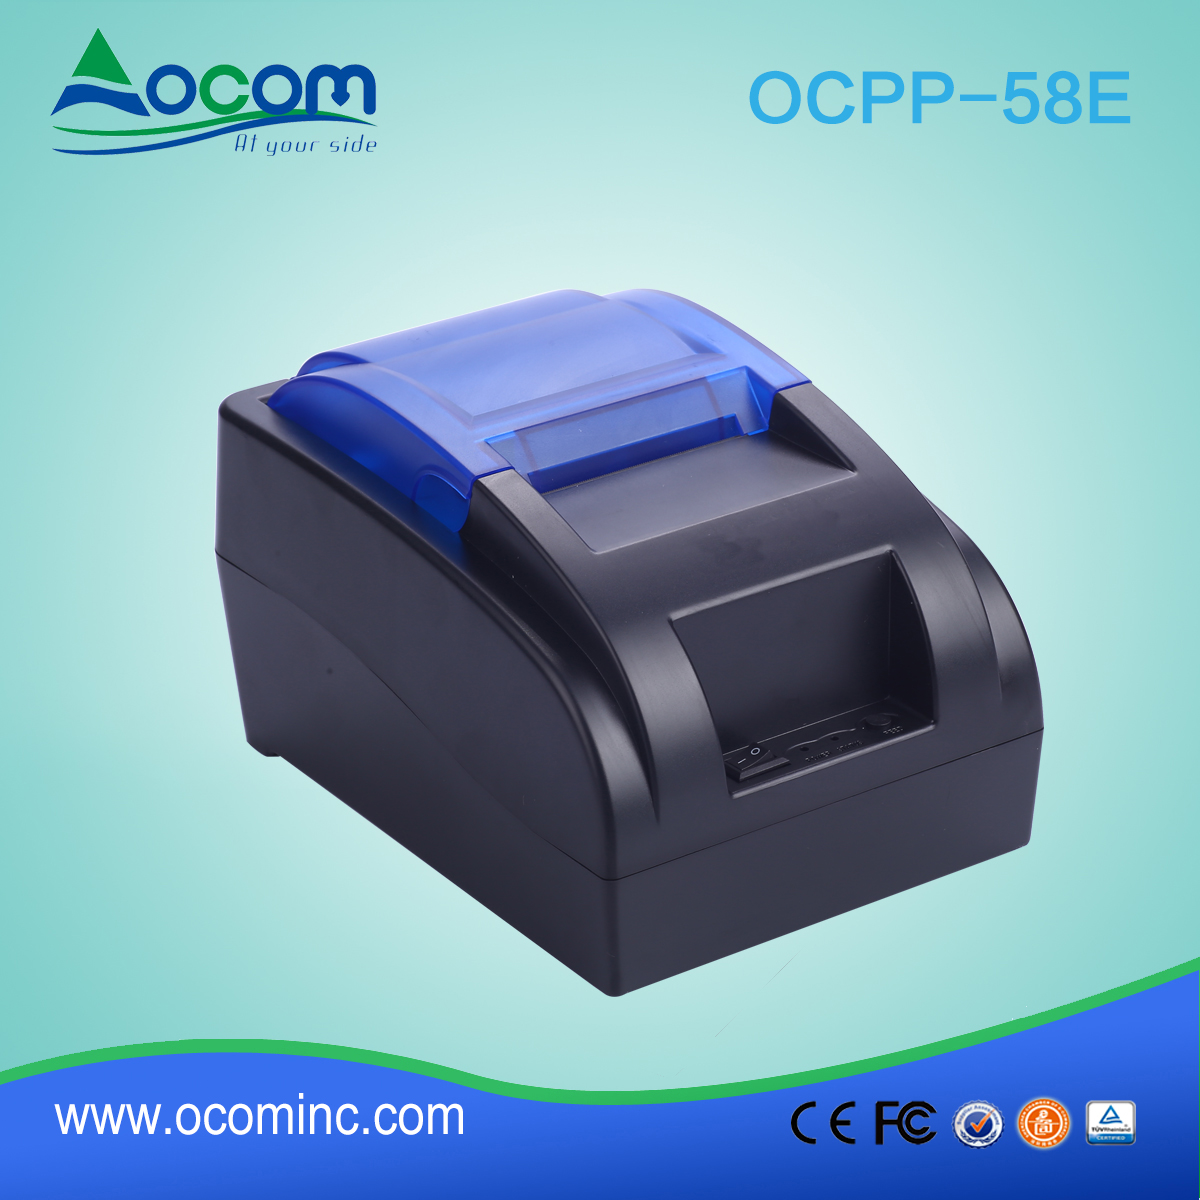 OCPP-58E-中国制造的低成本58mm POS打印机，带有蓝牙或WIFI选项